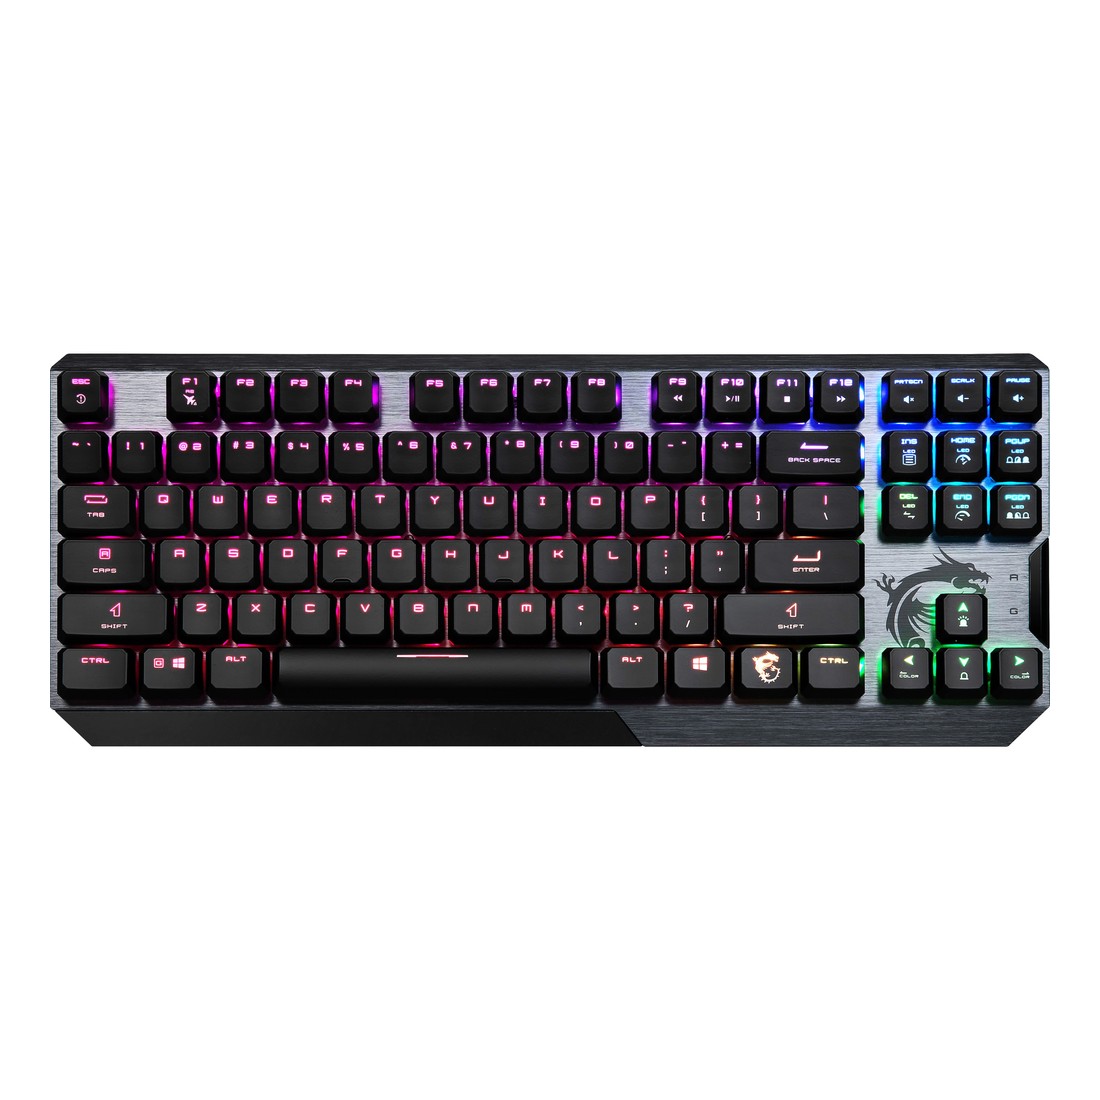 MSI Vigor GK50 Low Profile TKL Gaming Keyboard - Black (US English)